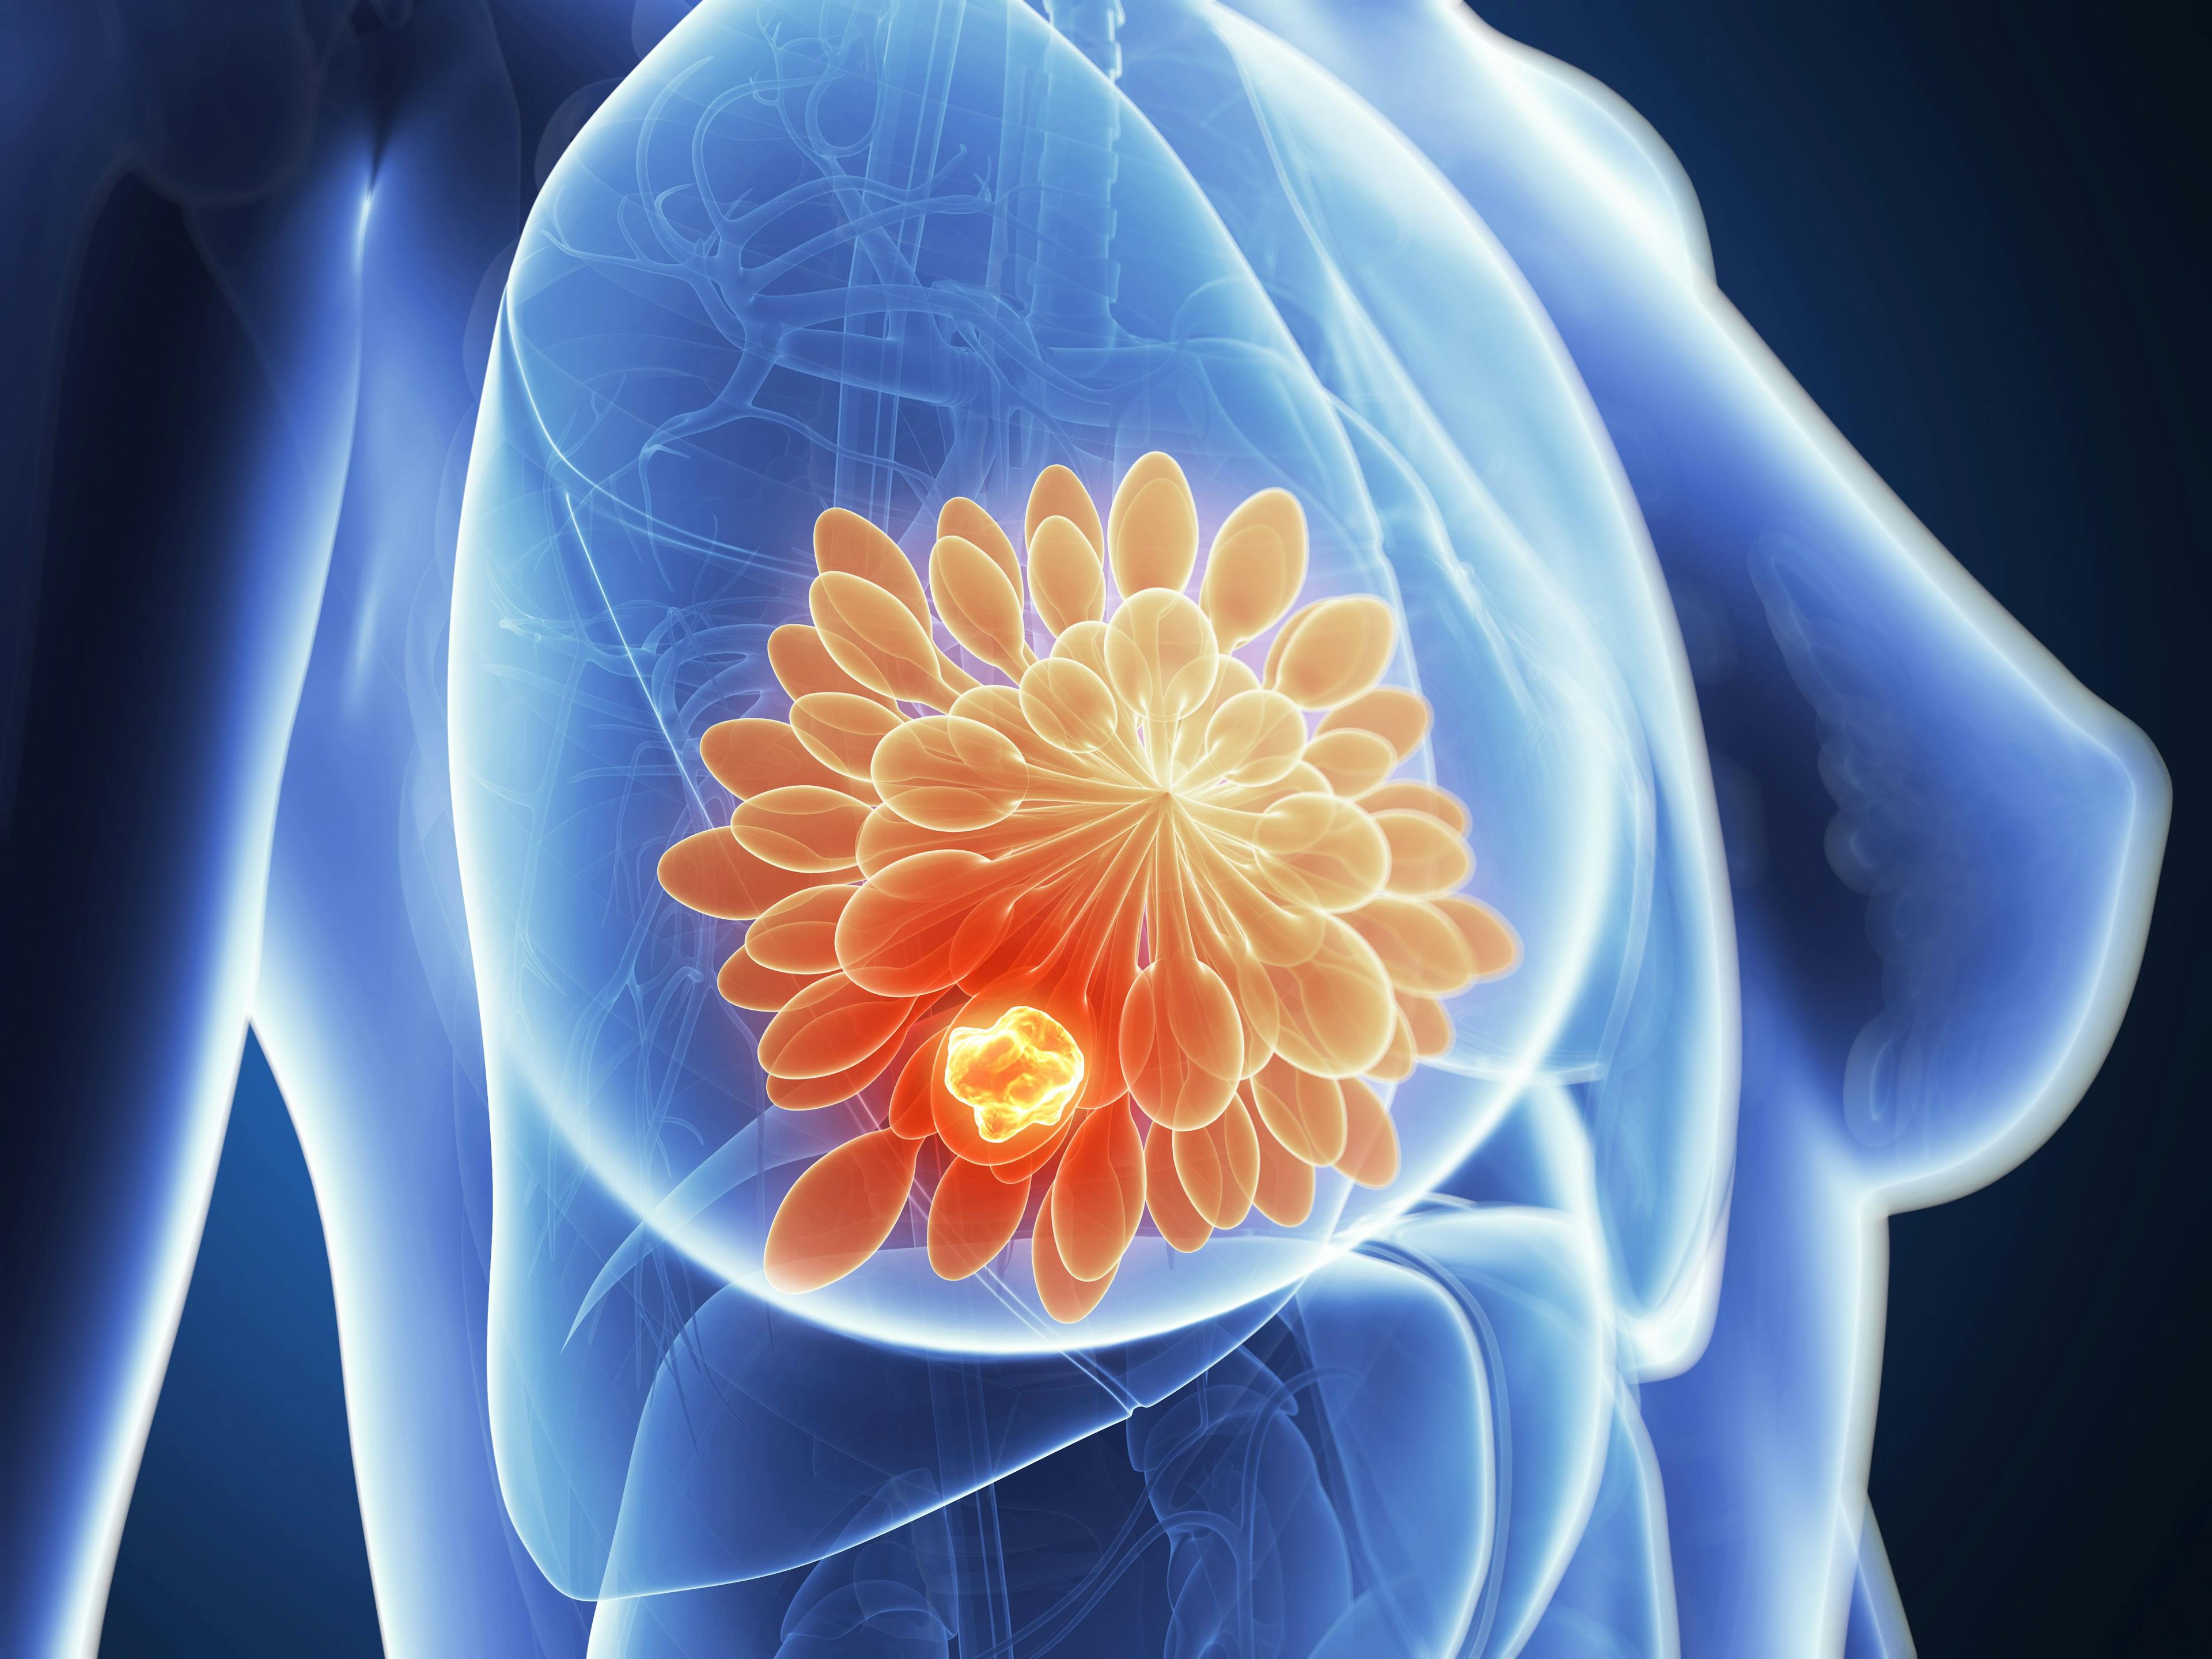 3d rendered illustration - breast cancer. Credit: SciePro - stock.adobe.com